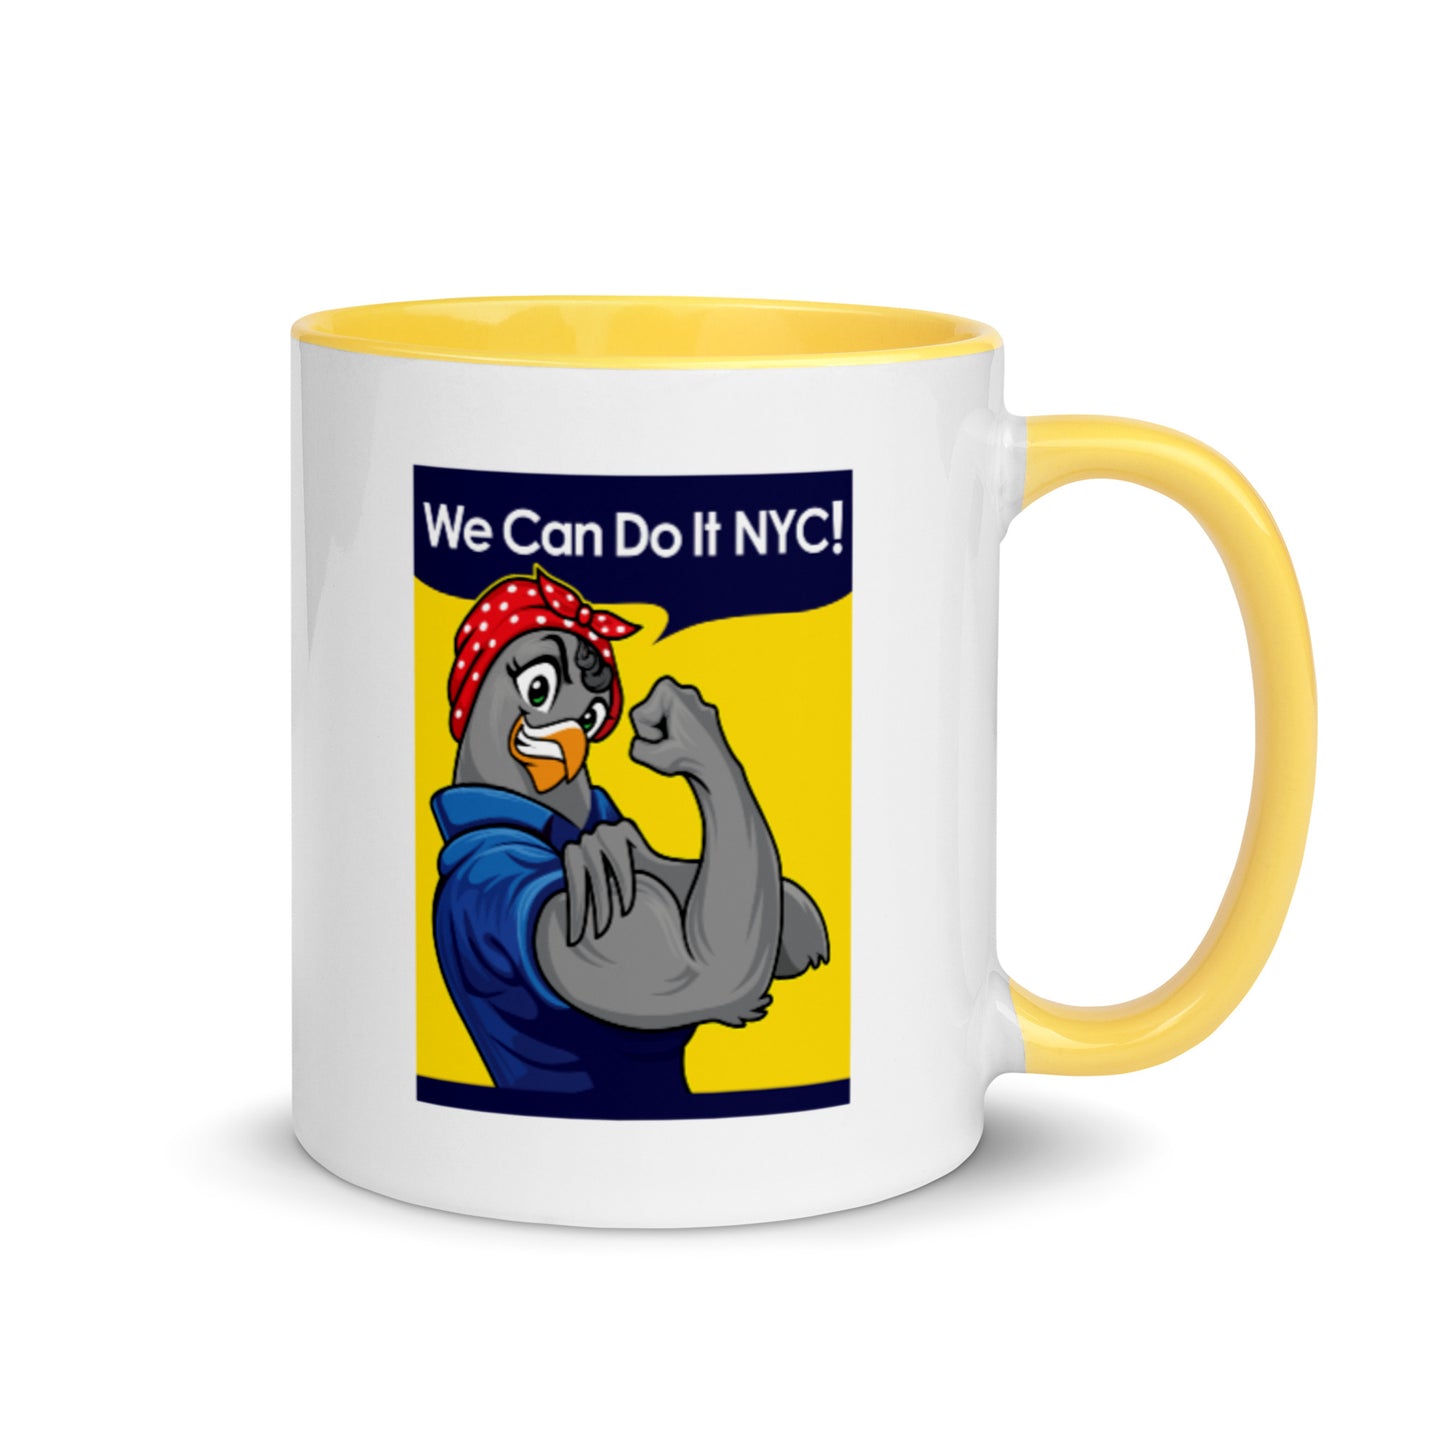 We Can Do it NYC! / Coffee Mug